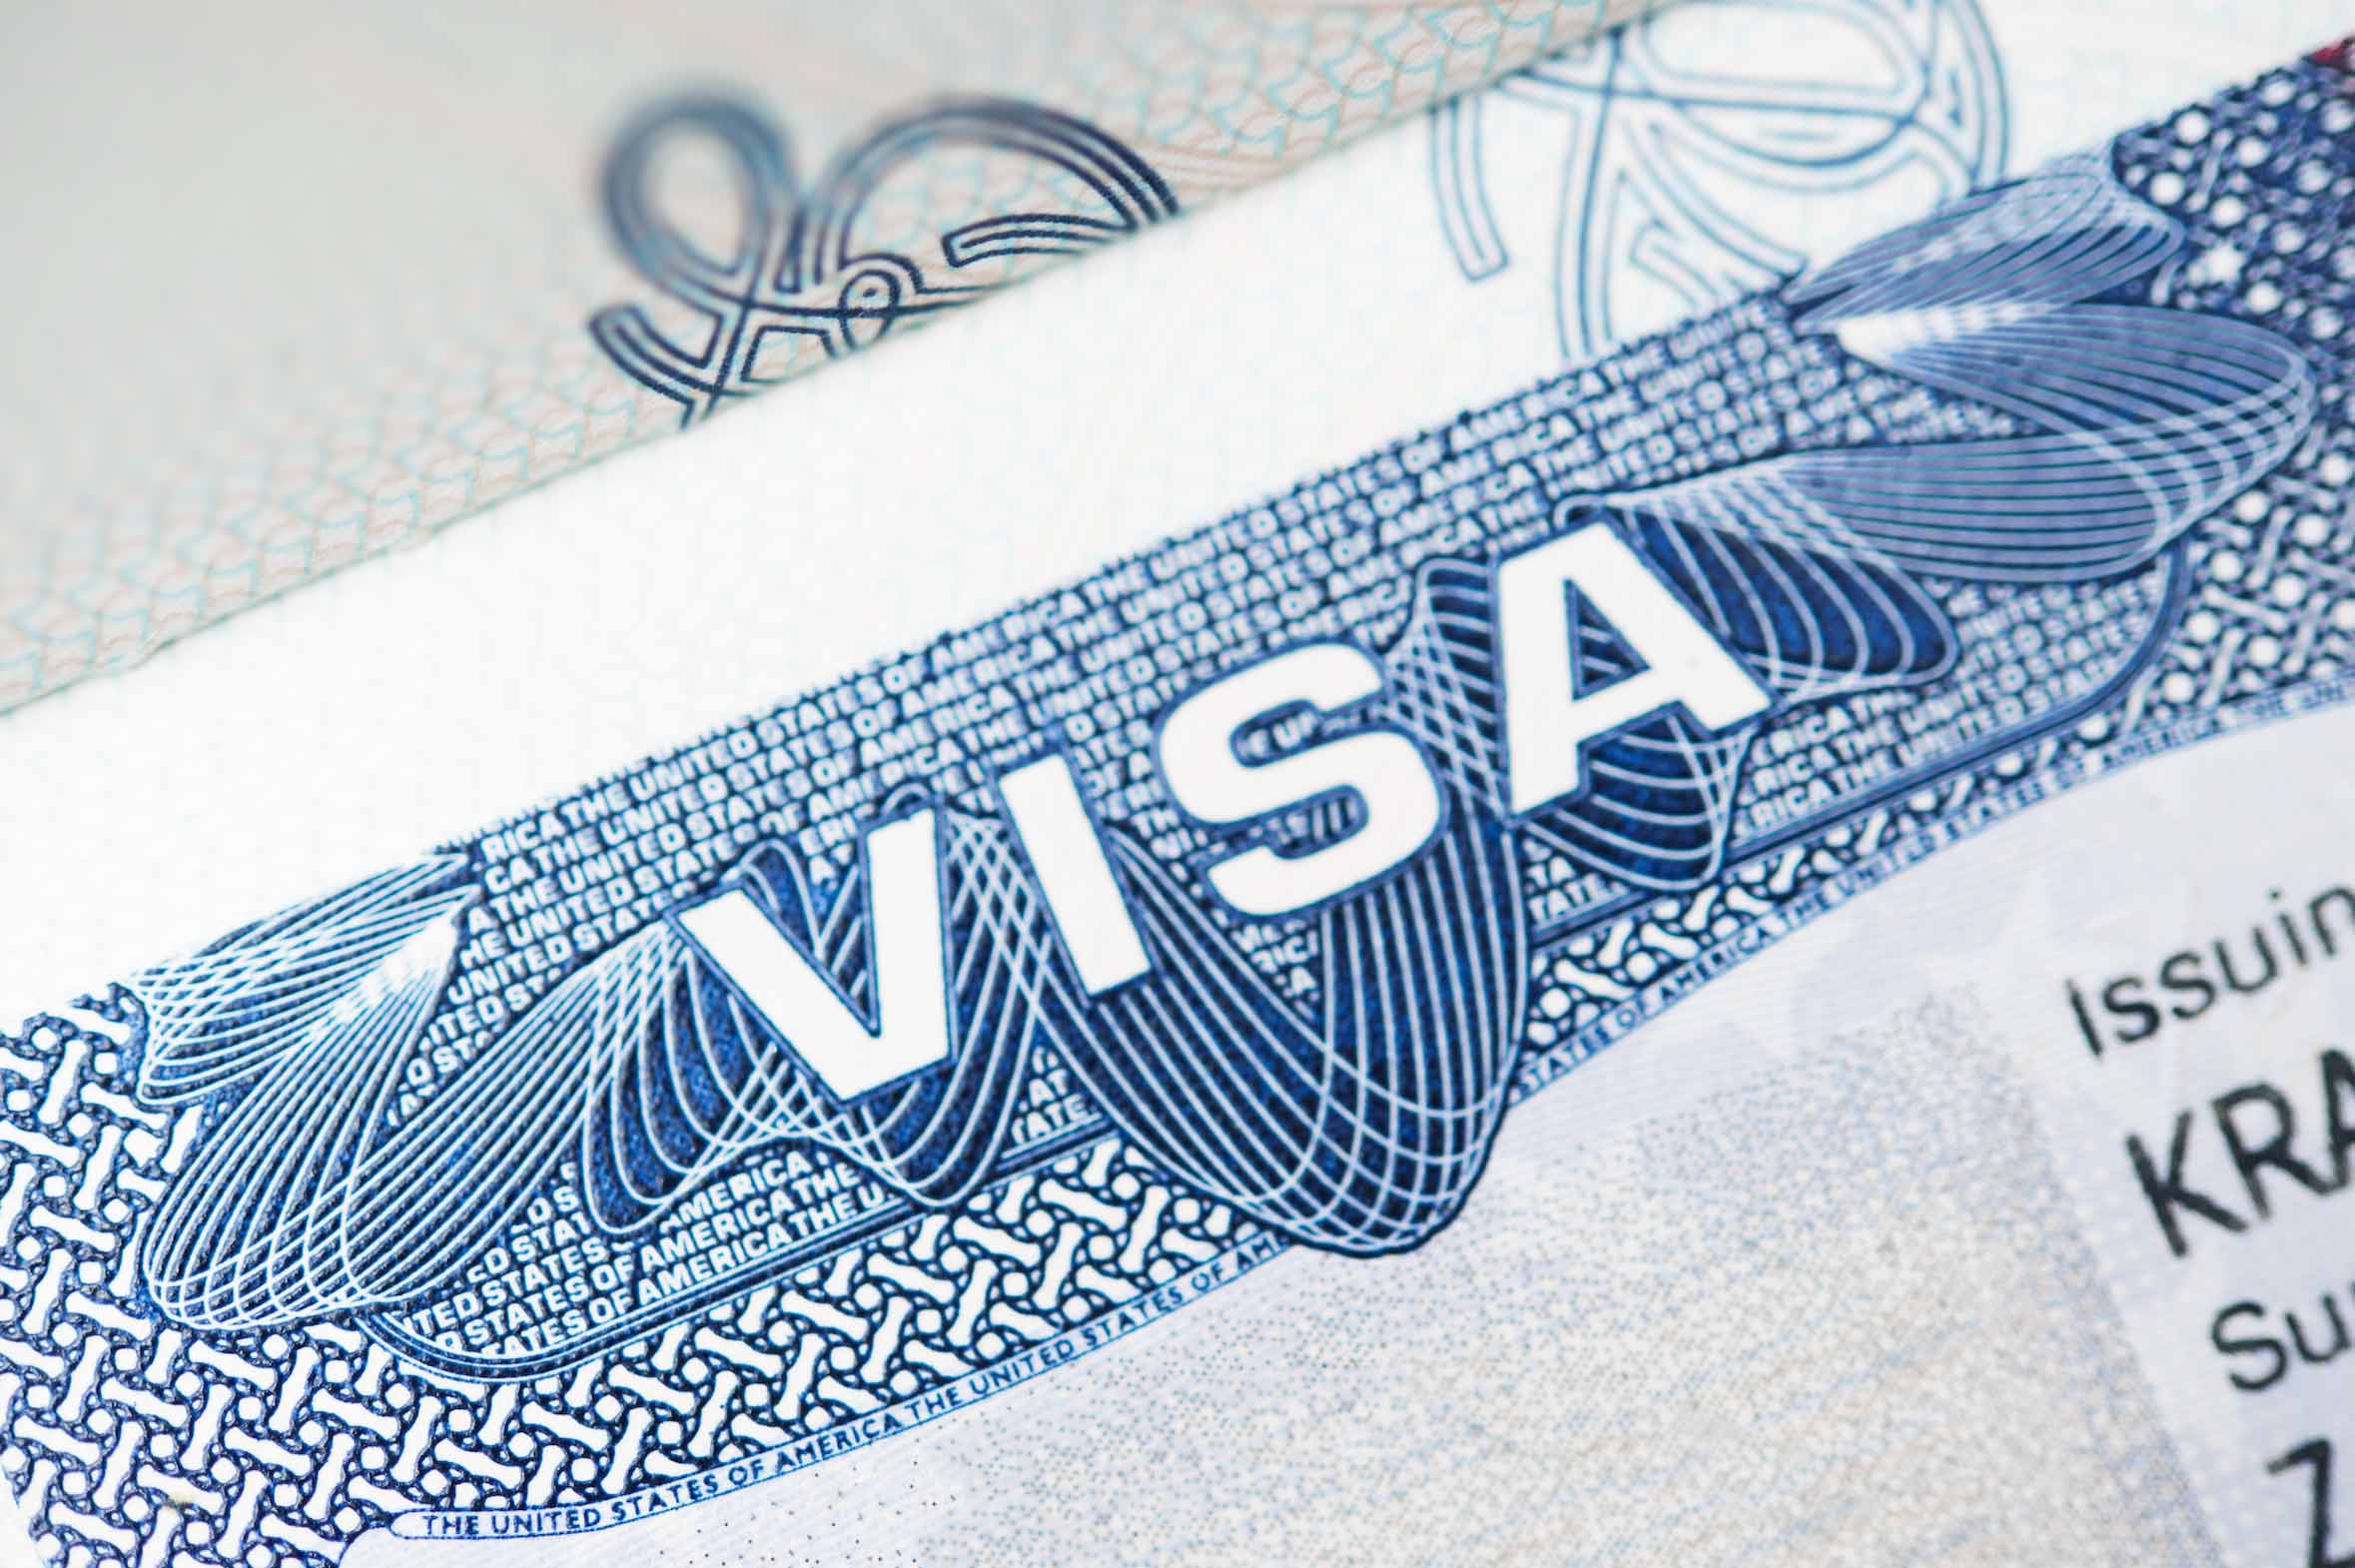 El proceso permitirán a familiares reunirse en Estados Unidos mientras esperan que sus visas de inmigrante estén disponibles